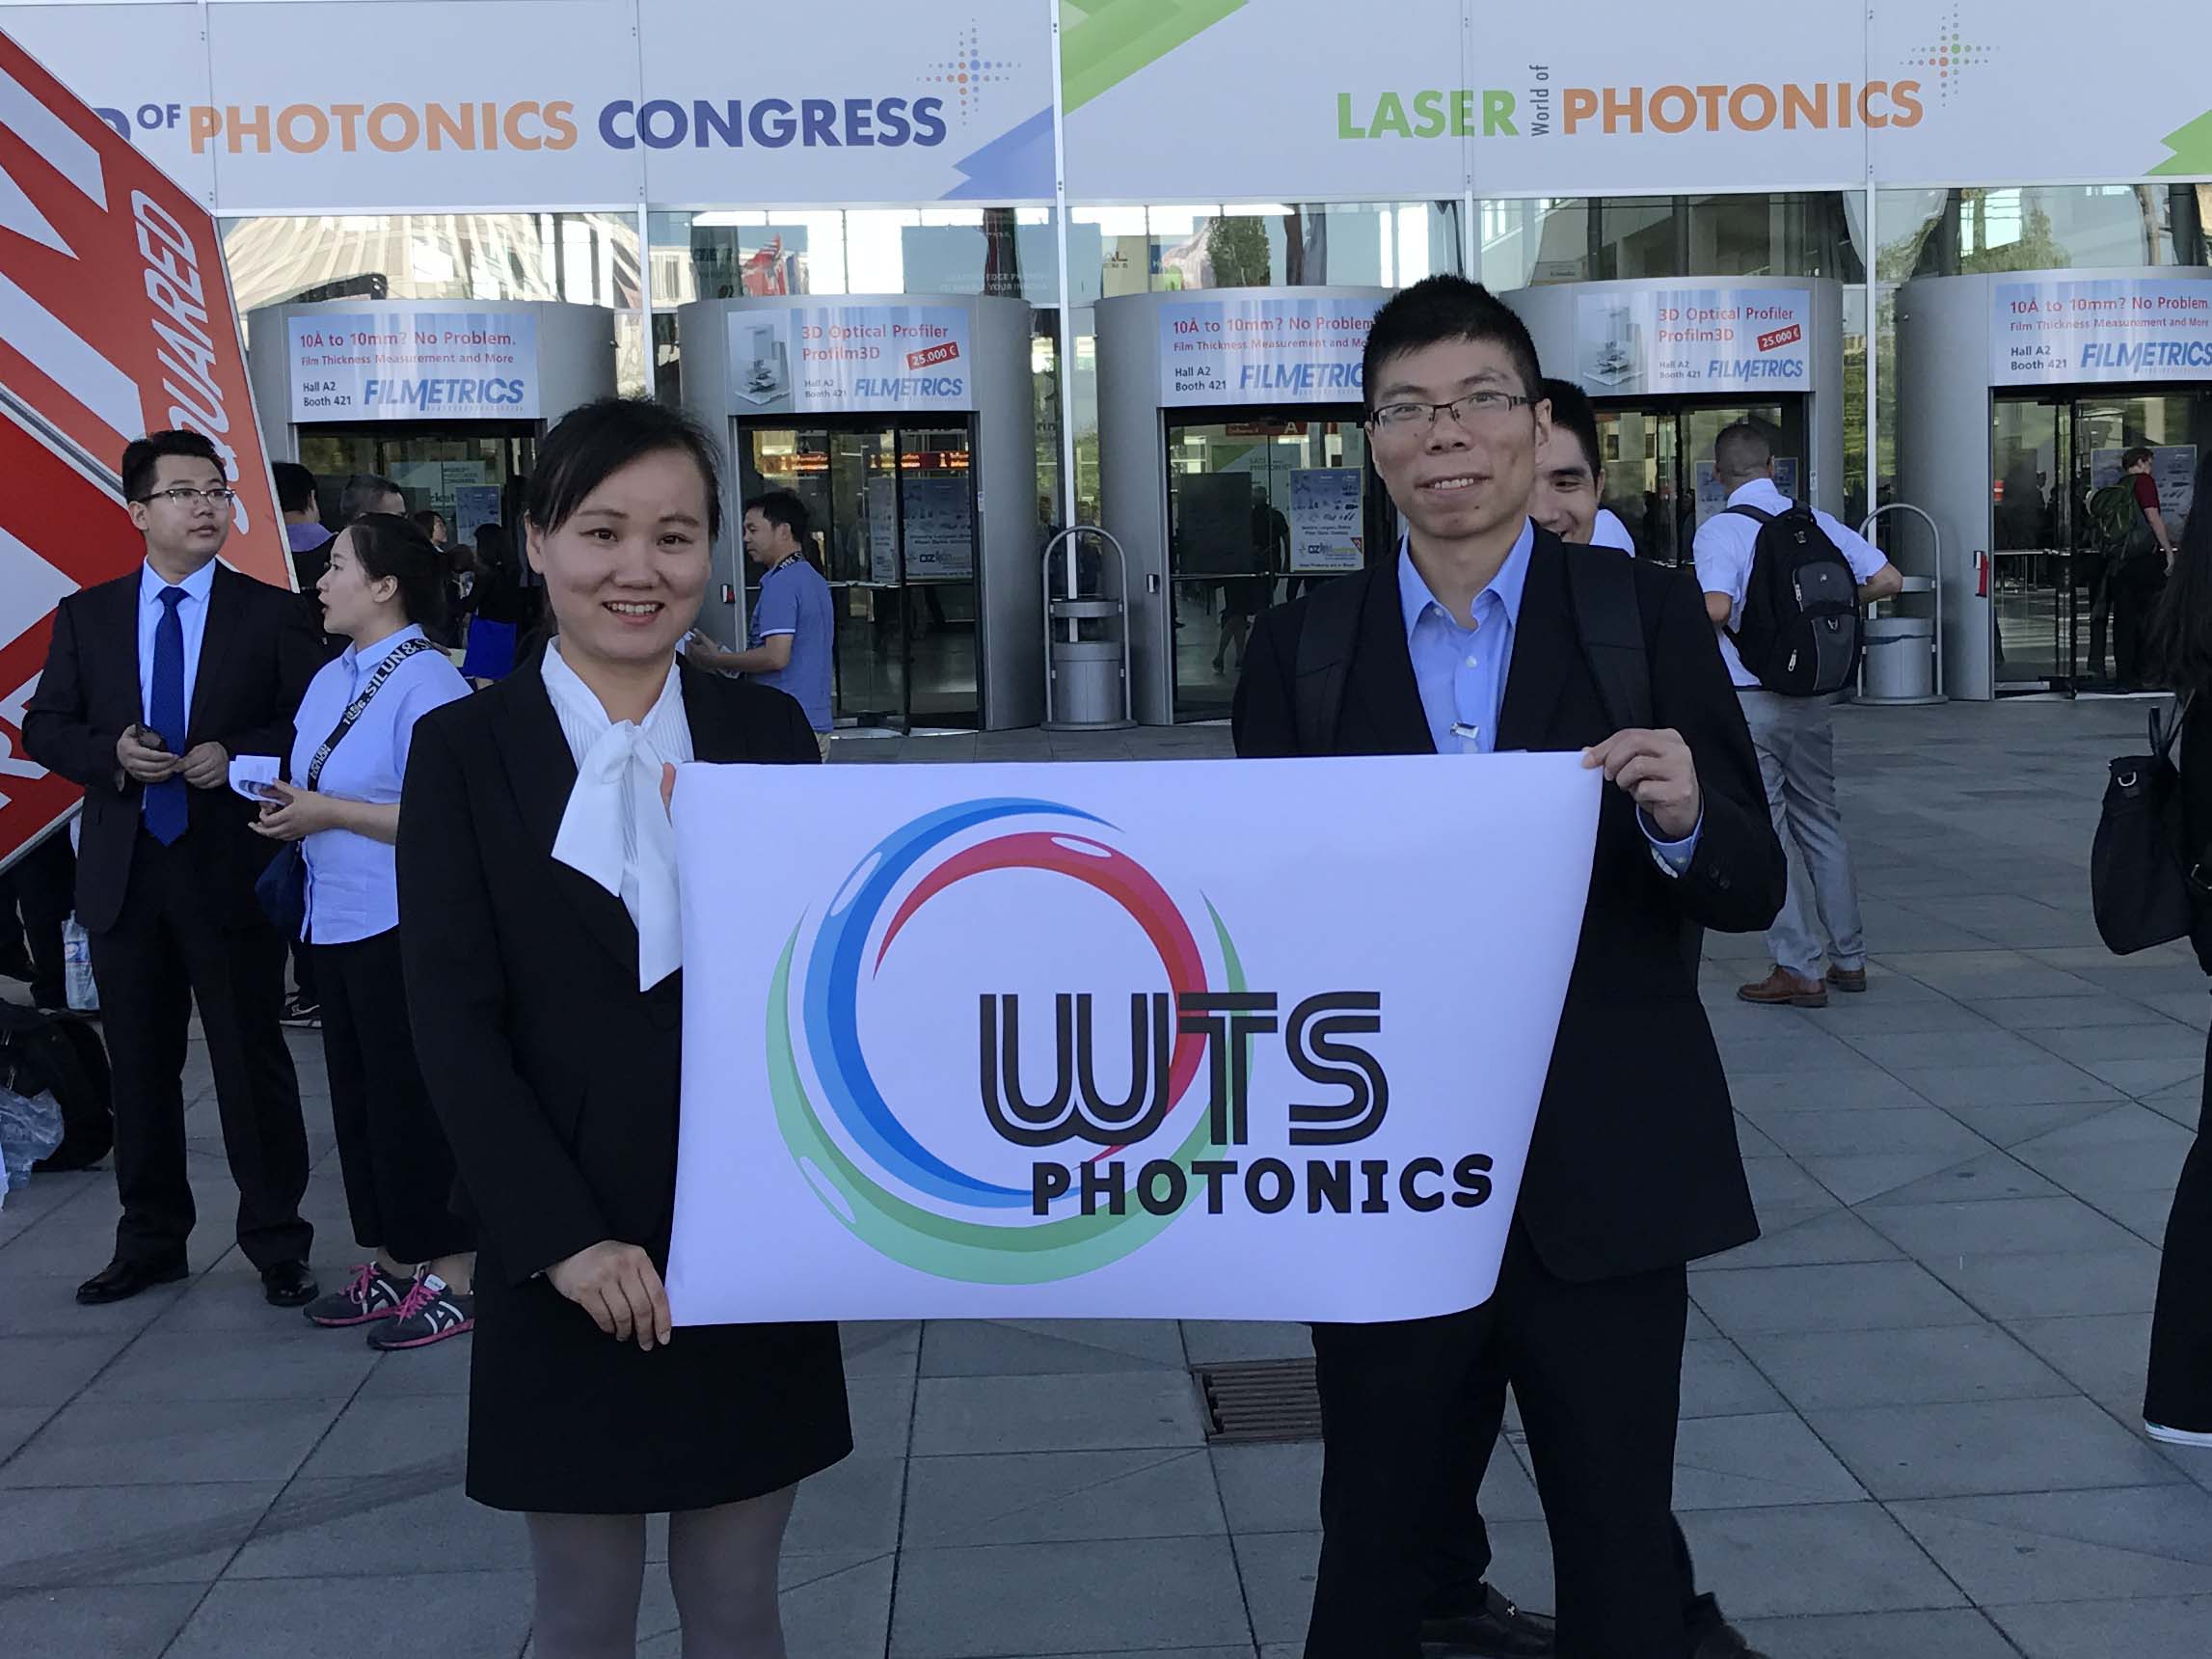 wts photonics a participé avec succès au monde laser de la photonique 2017